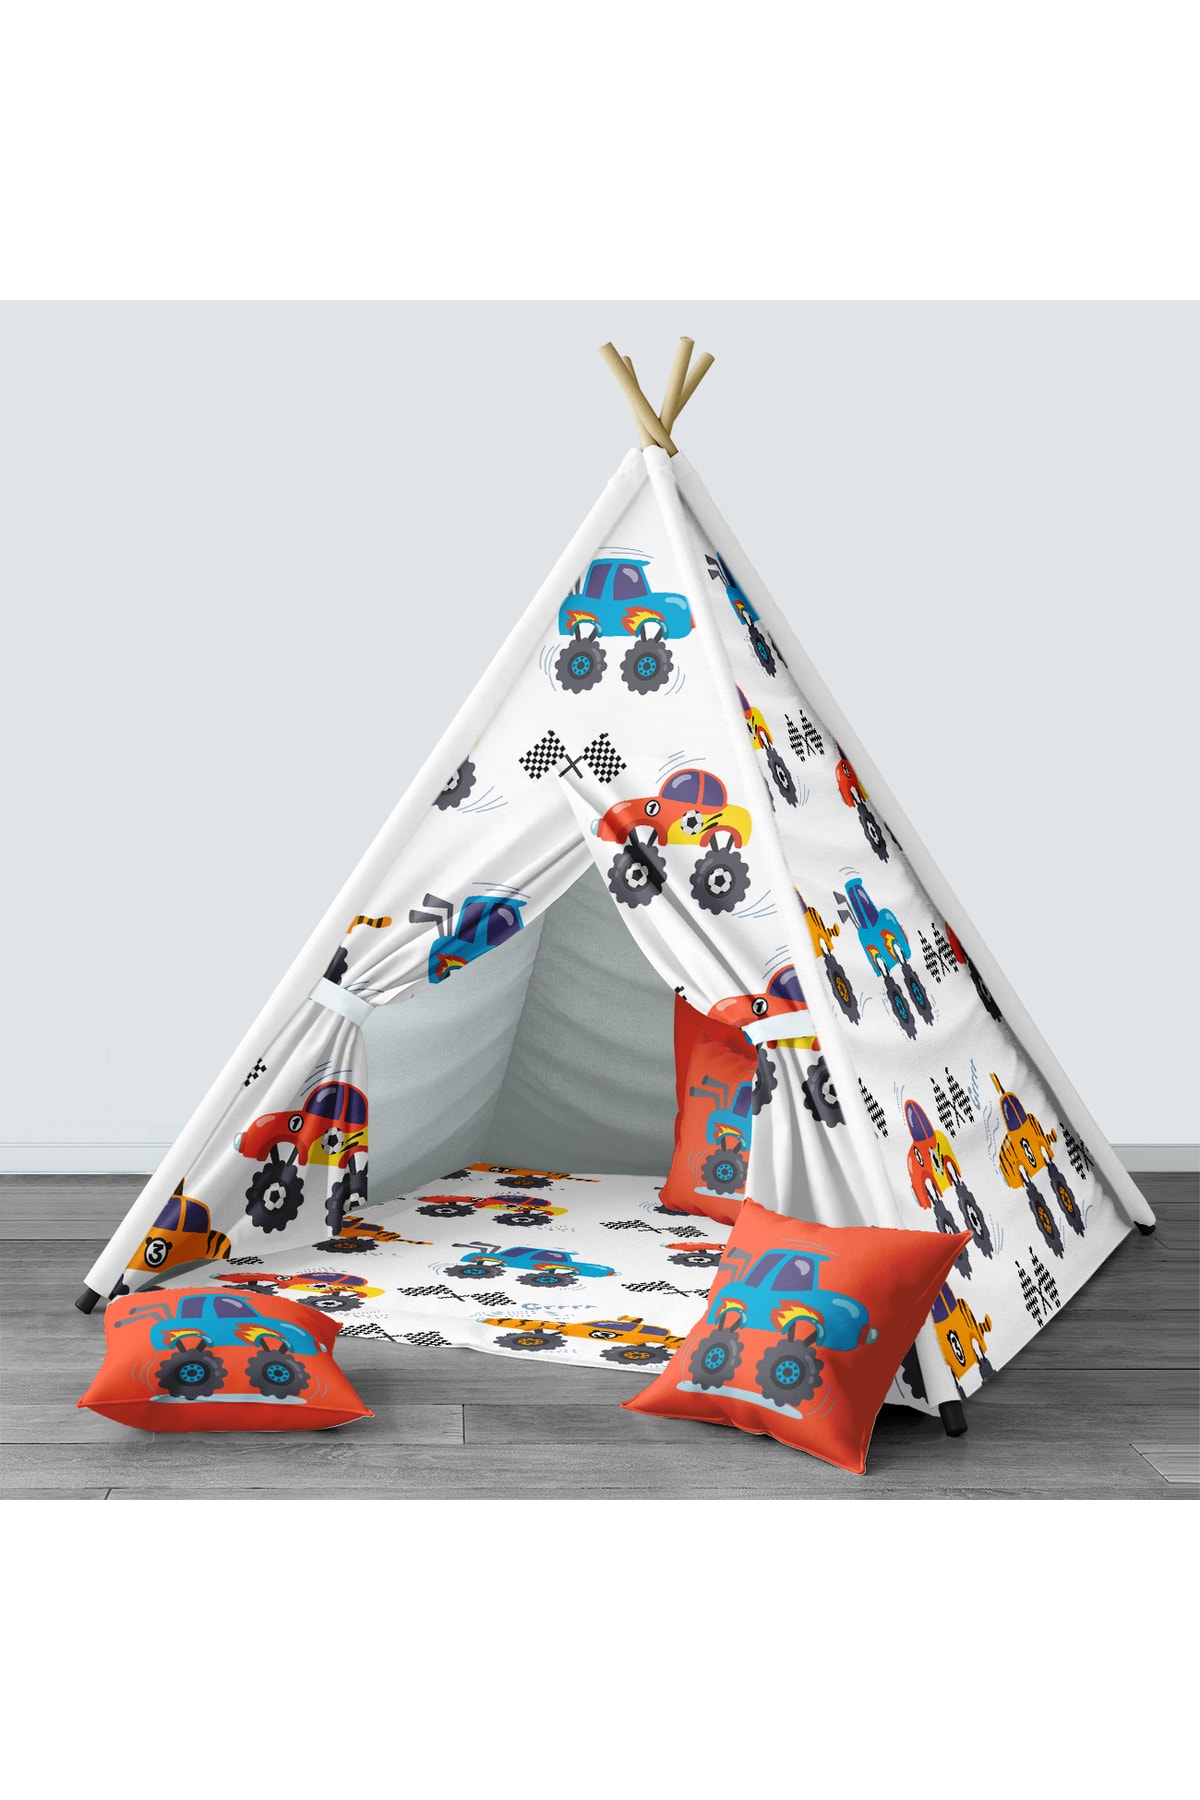 Tinybabyconcept Çocuk Odası Kızıldereli Çadır Katlanabilir Çocuk Oyun Çadırı Oyun Evi Araba Desenli 049